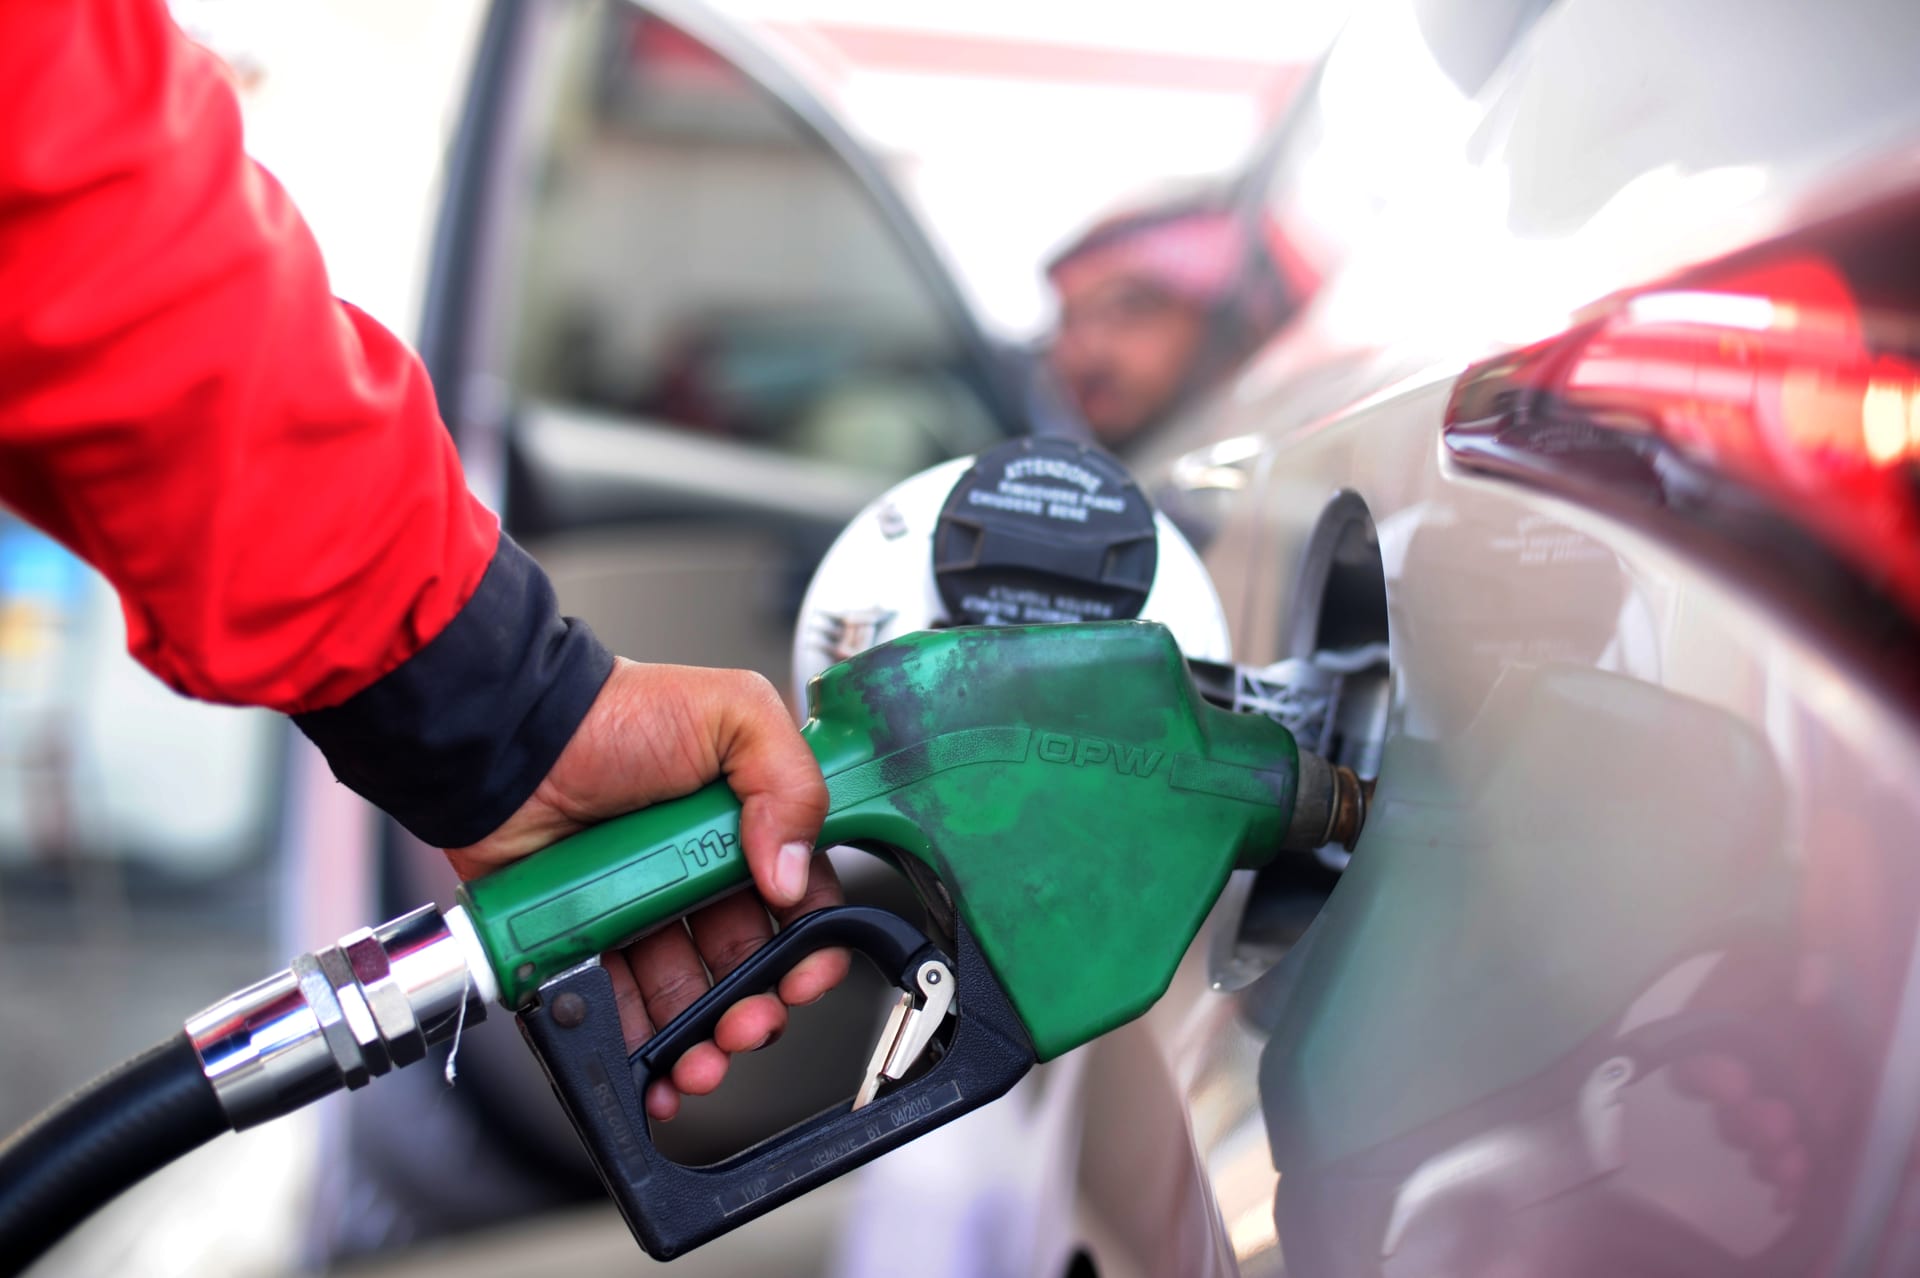 اعلان اسعار البنزين فى السعودية لشهر مارس 2021 لمراجعة اسعار بنزين 91 وبنزين 95 فى محطات البنزين